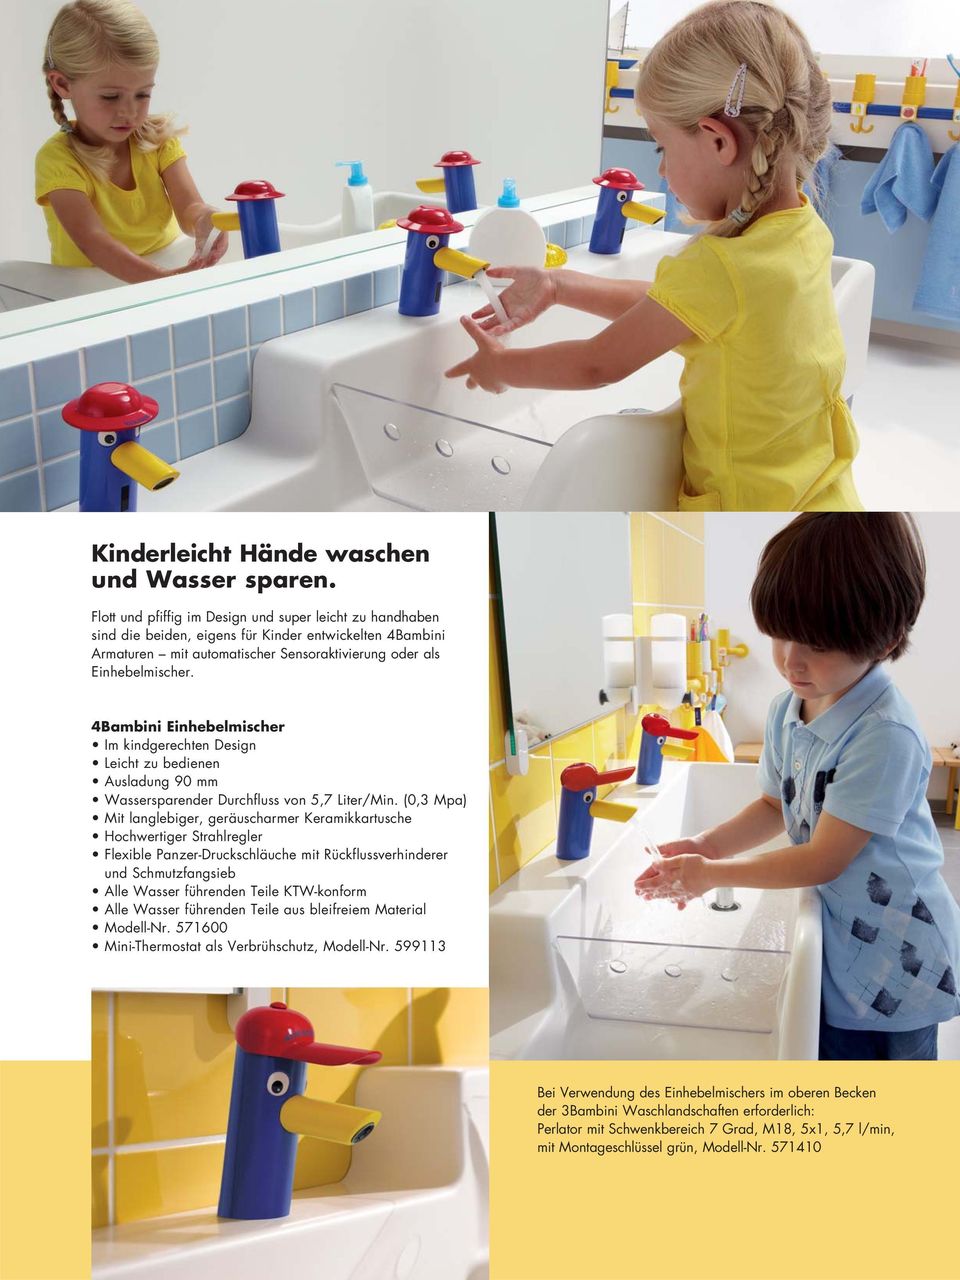 4Bambini Einhebelmischer Im kindgerechten Design Leicht zu bedienen Ausladung 90 mm Wassersparender Durchfluss von 5,7 Liter/Min.